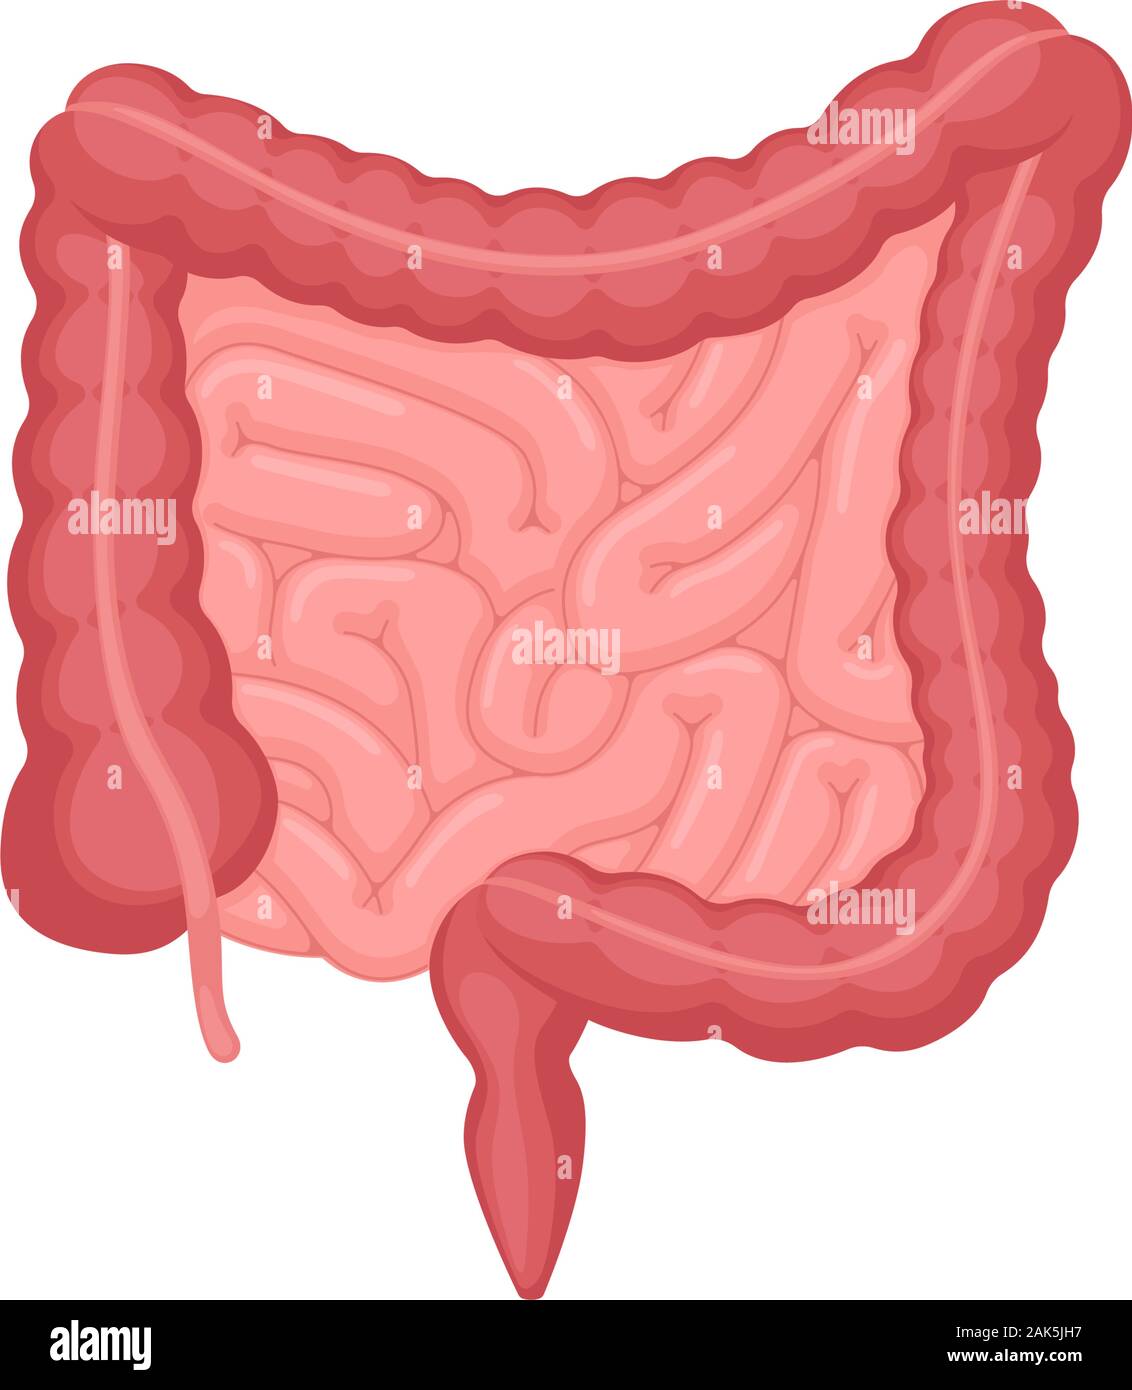 Anatomie des menschlichen Darms . Bauchhöhle Verdauungs-und Ausscheidung inneren Organ. Dünndarm und Dickdarm mit Duodenum Rektum und Blinddarm Vektor Verdauung Illustration Stock Vektor